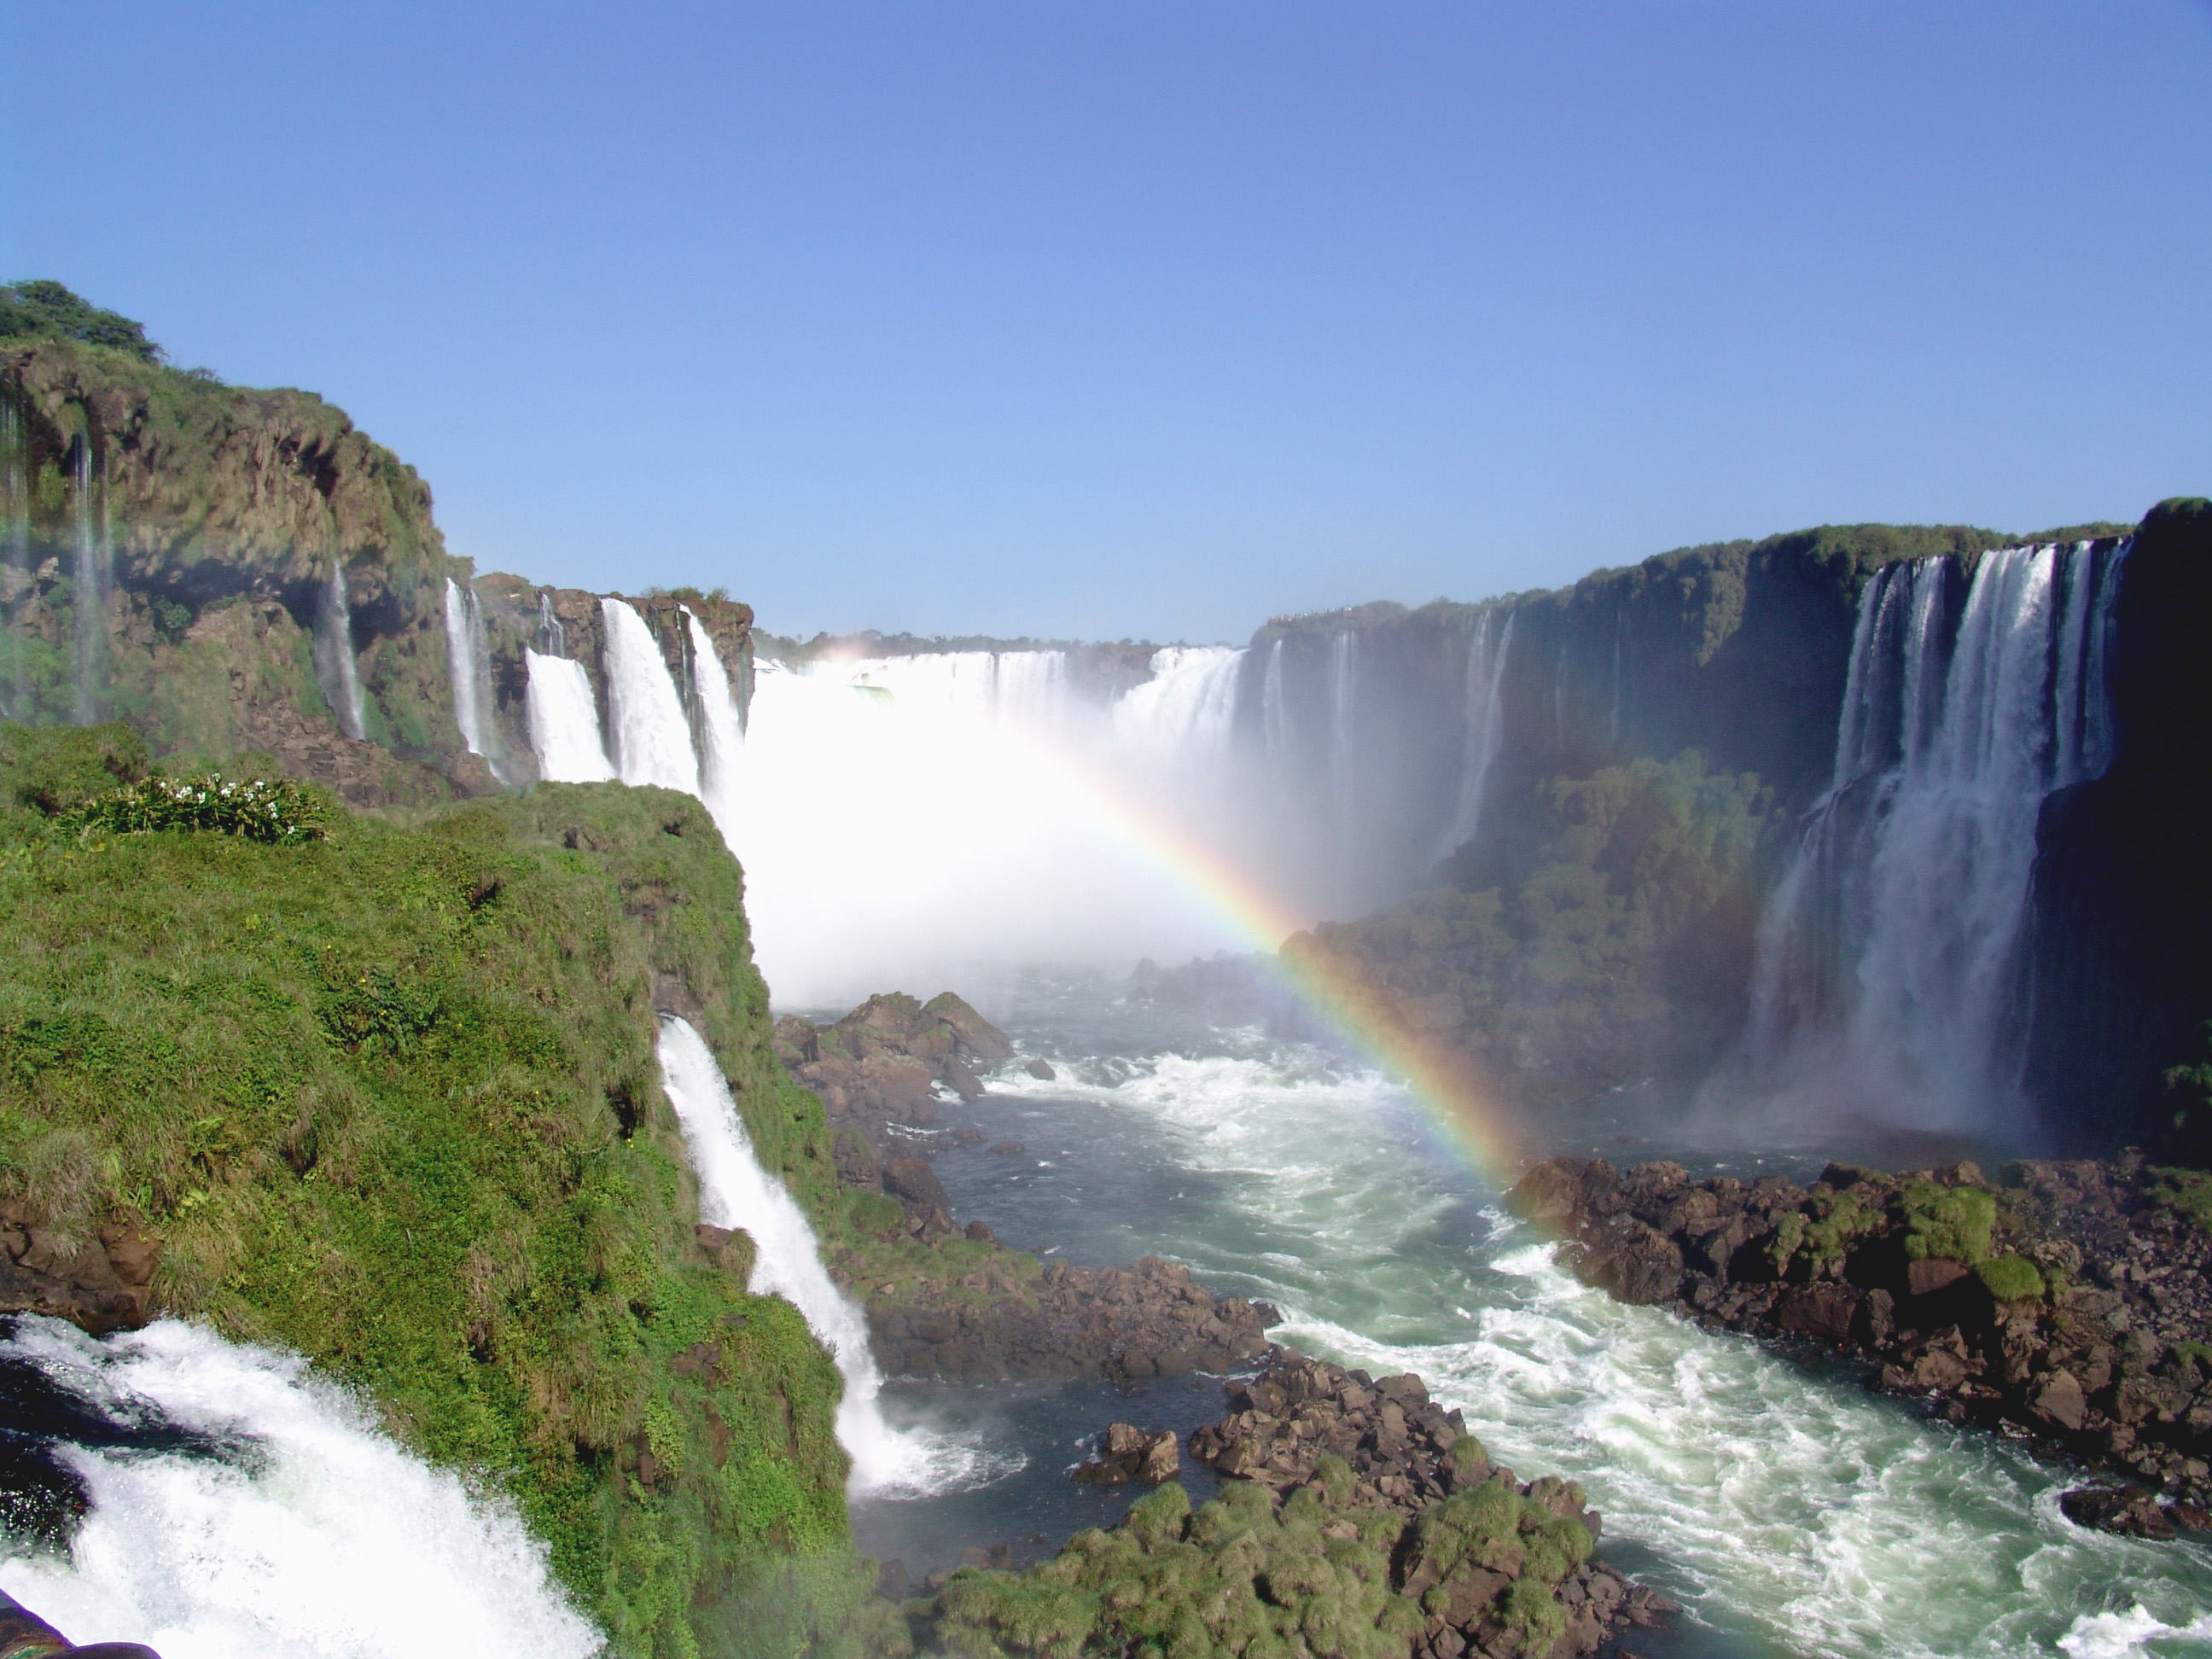 Download this Iguazu Falls picture